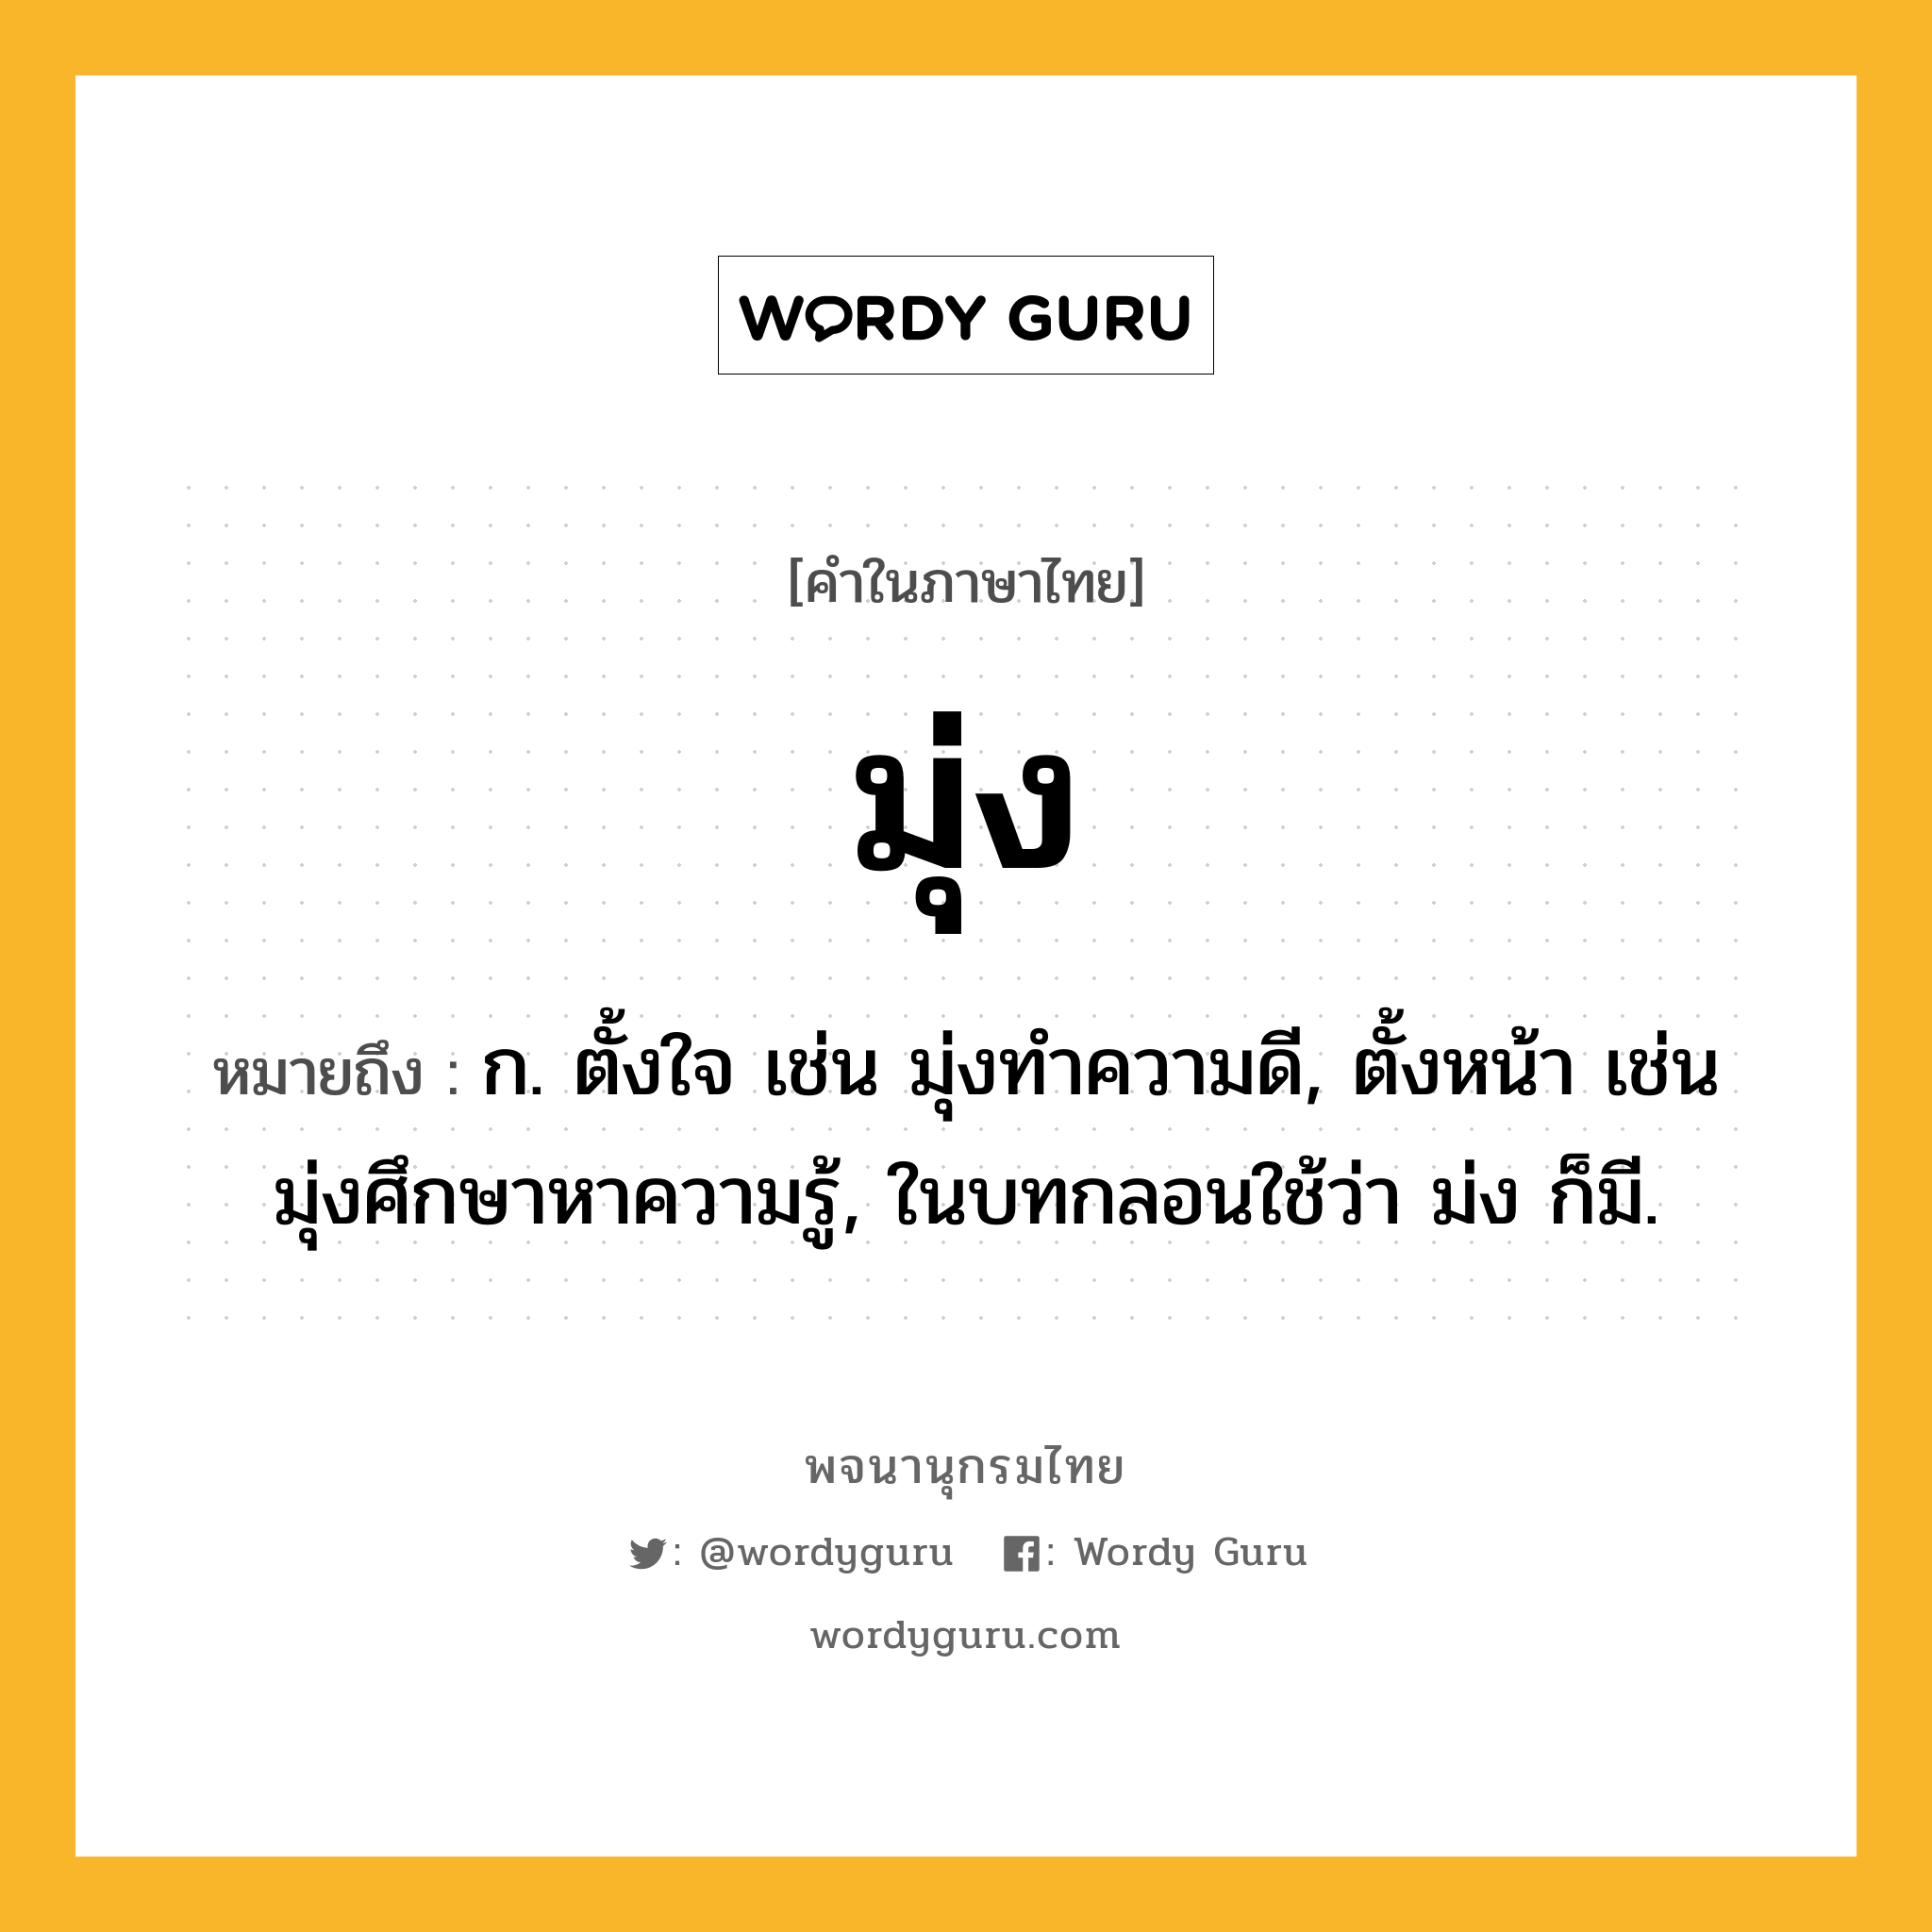 มุ่ง ความหมาย หมายถึงอะไร?, คำในภาษาไทย มุ่ง หมายถึง ก. ตั้งใจ เช่น มุ่งทำความดี, ตั้งหน้า เช่น มุ่งศึกษาหาความรู้, ในบทกลอนใช้ว่า ม่ง ก็มี.